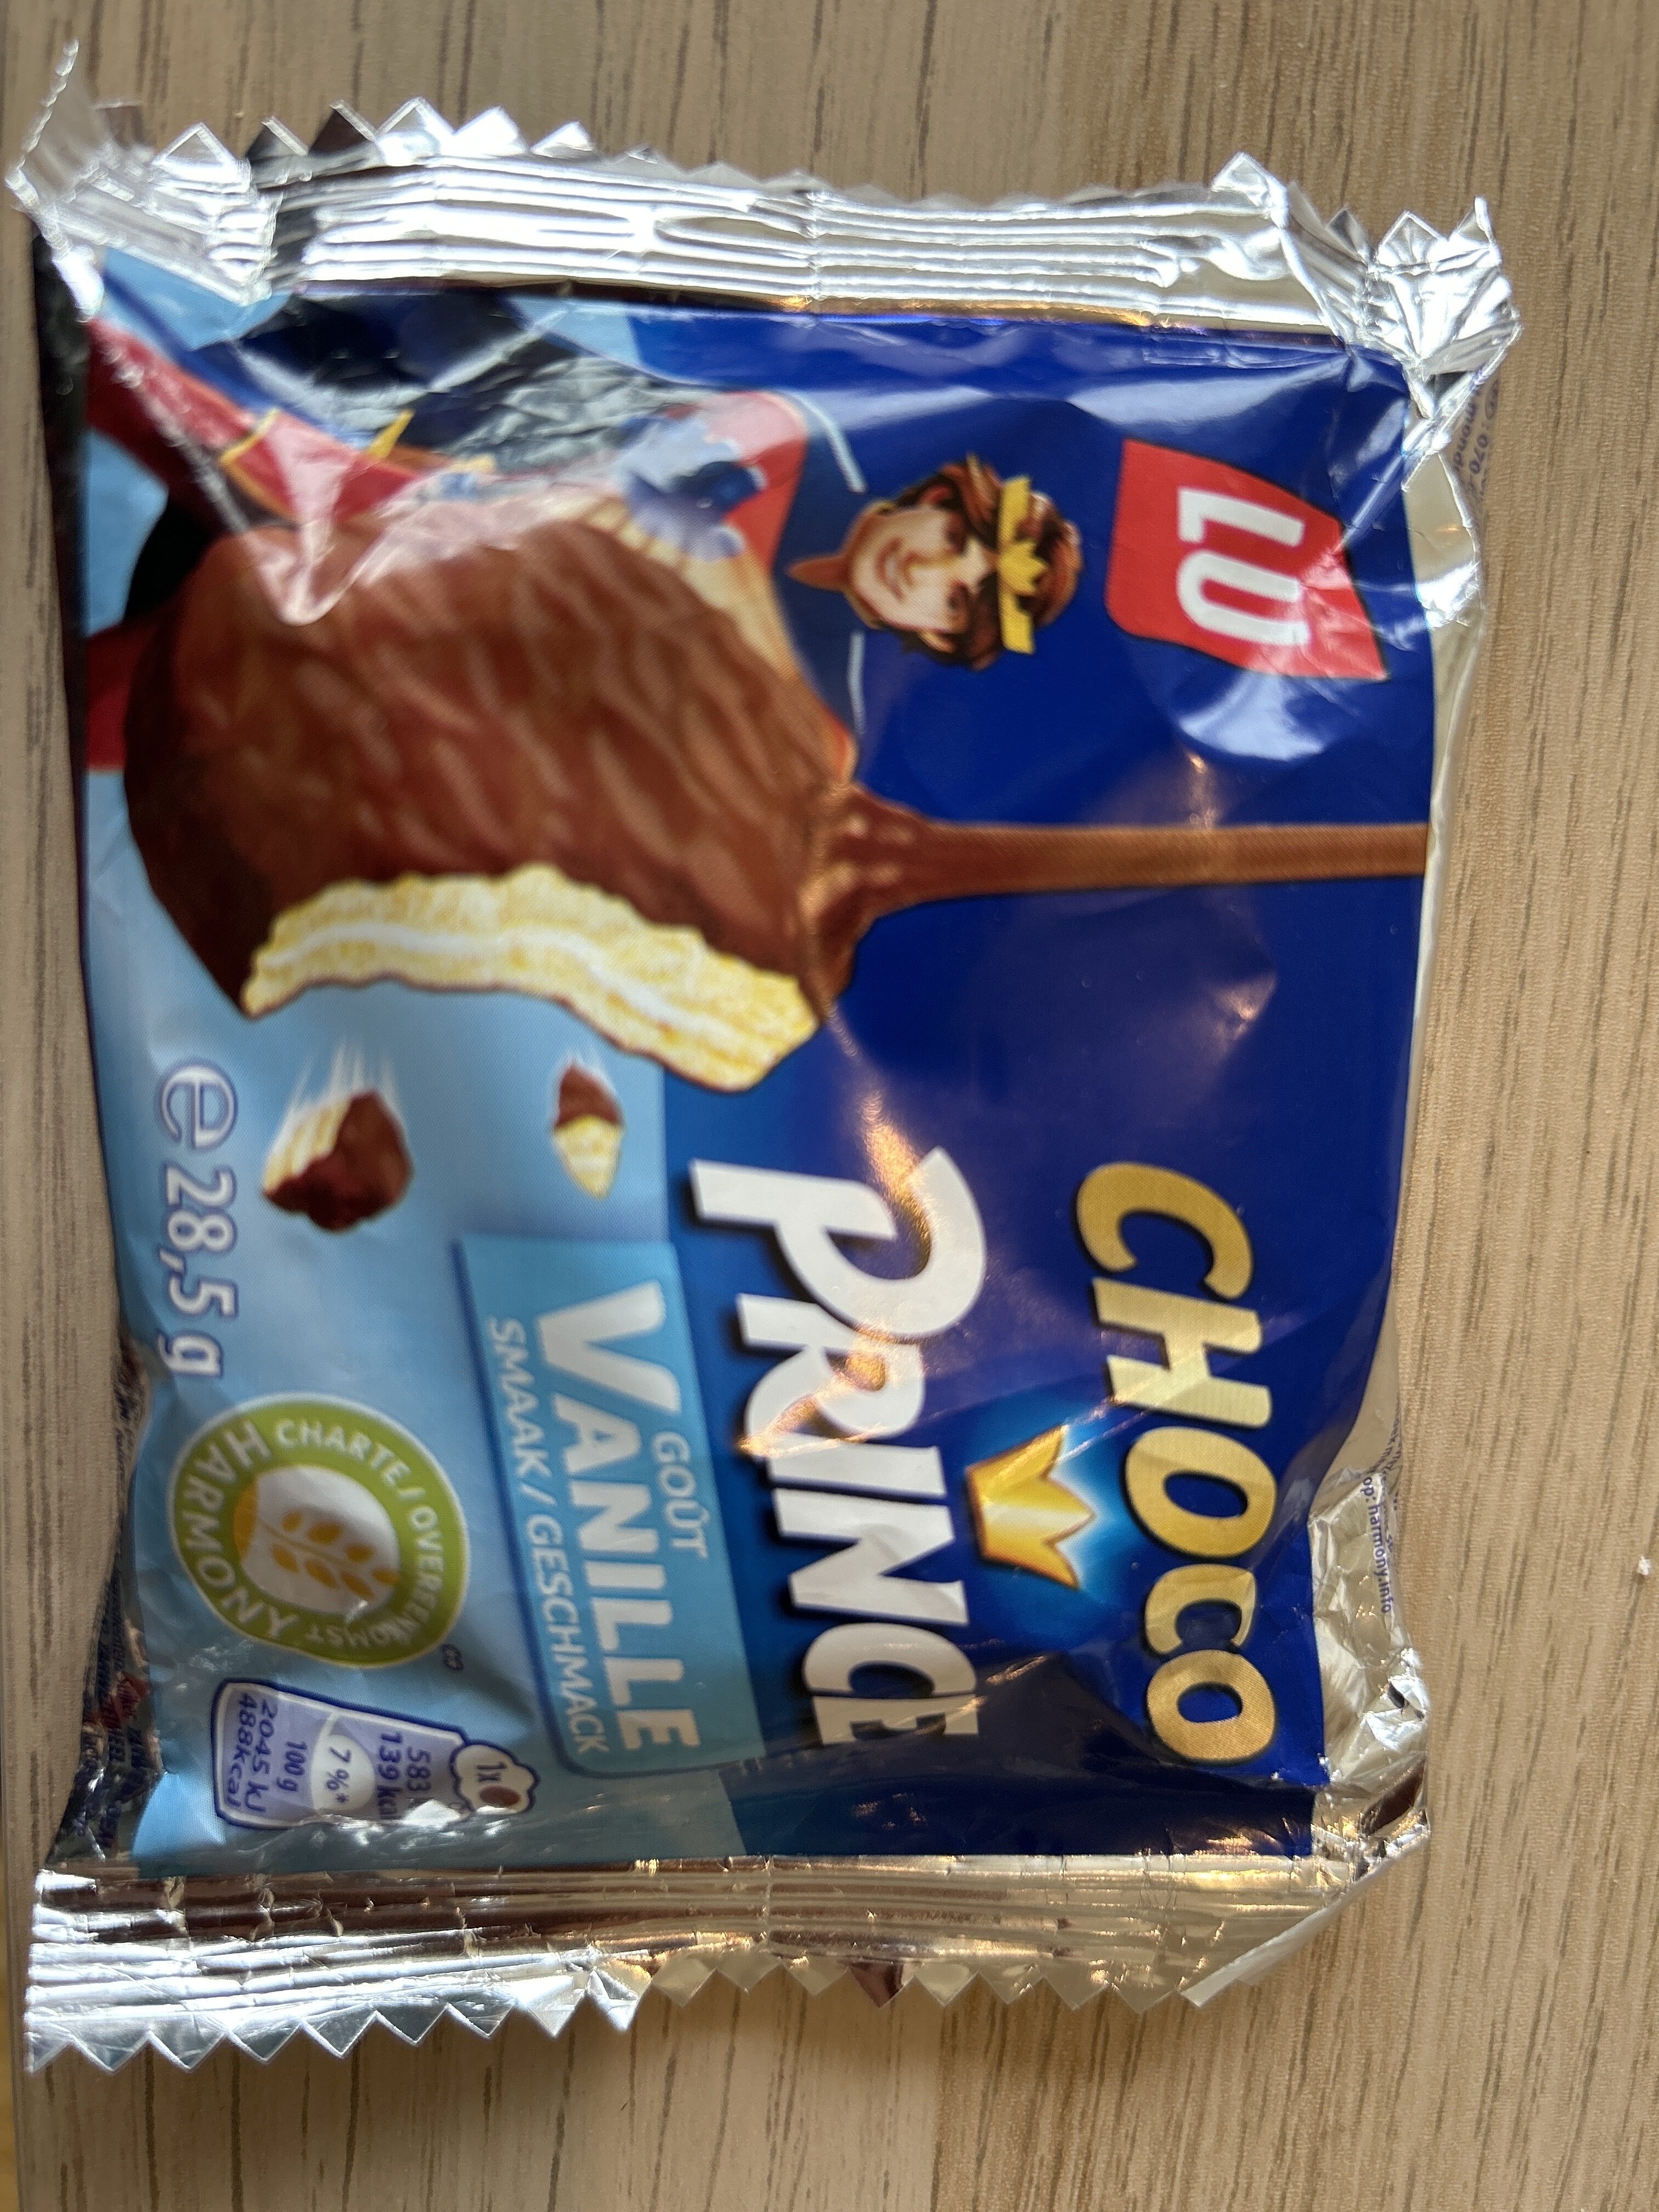 Choco prince goût vanille - Product - en